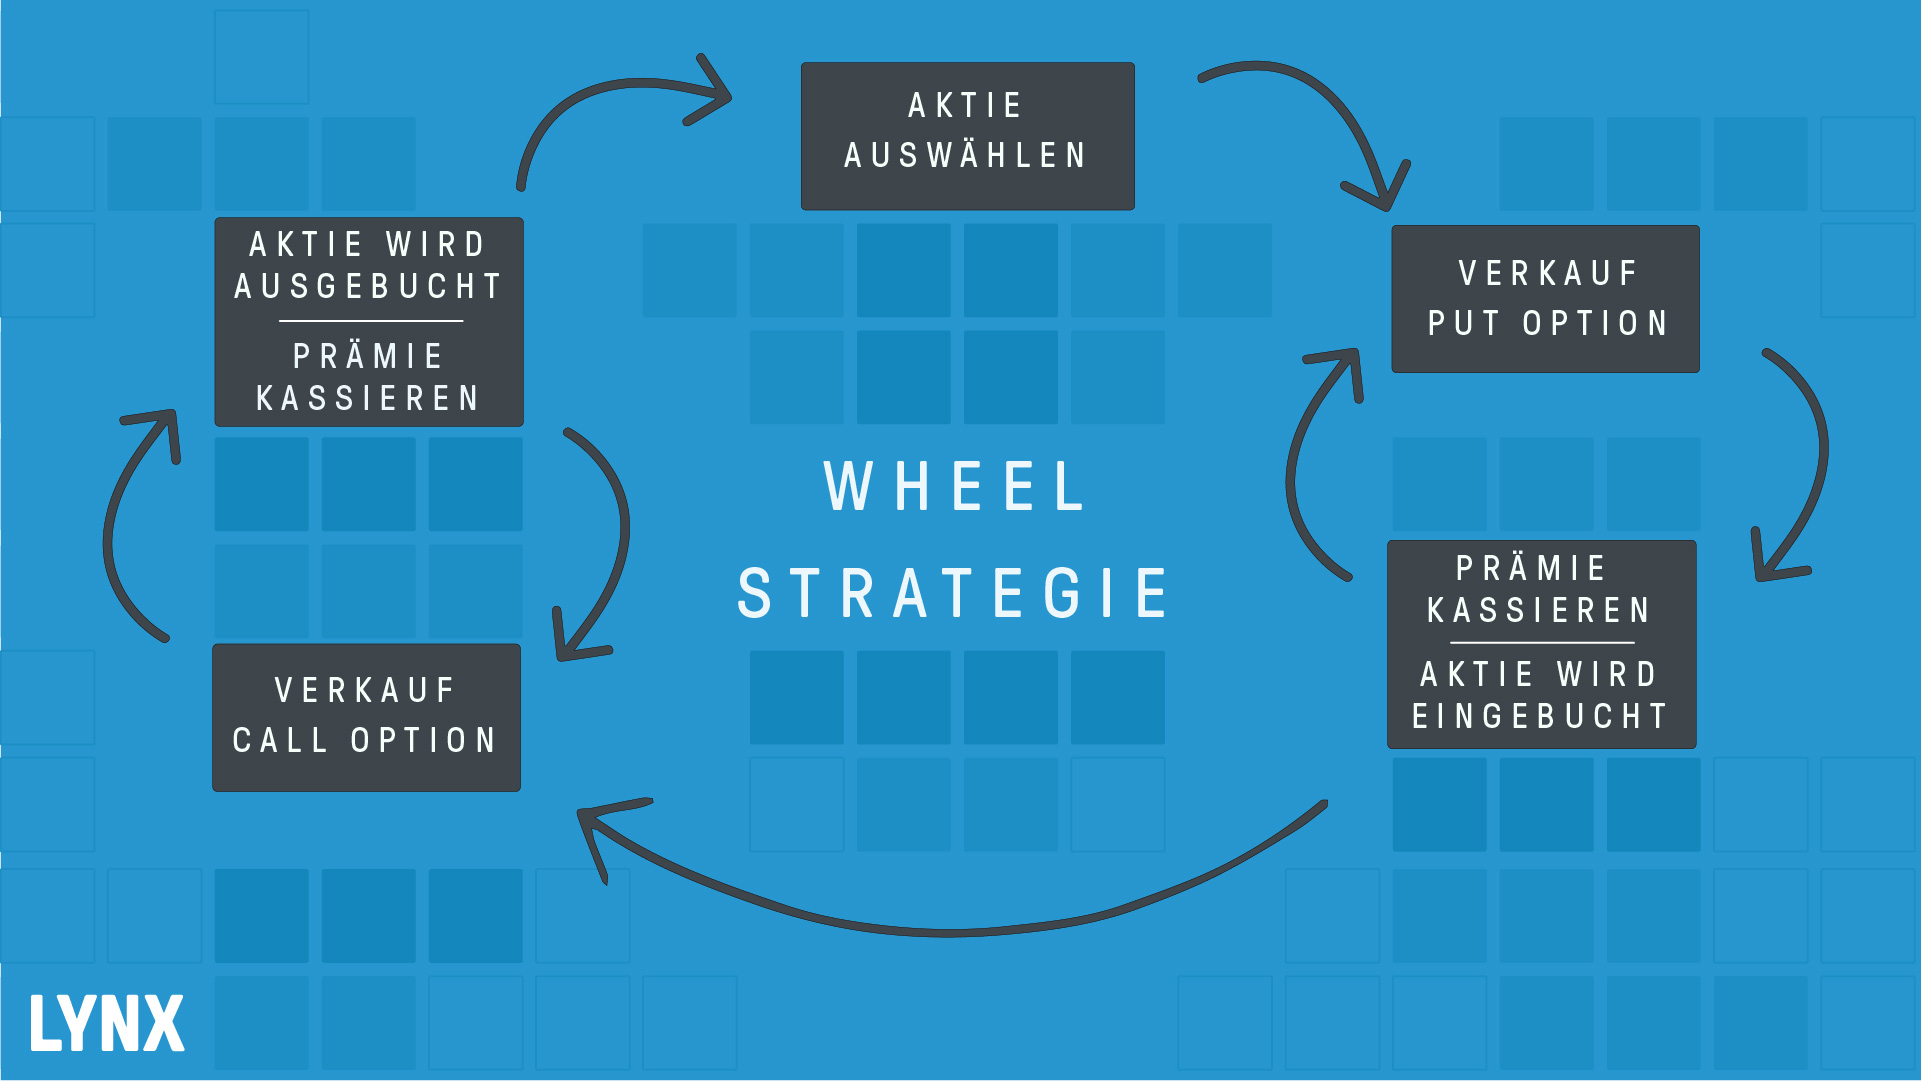 Wheelstrategie: Optionsstrategie für Investoren | Online Broker LYNX